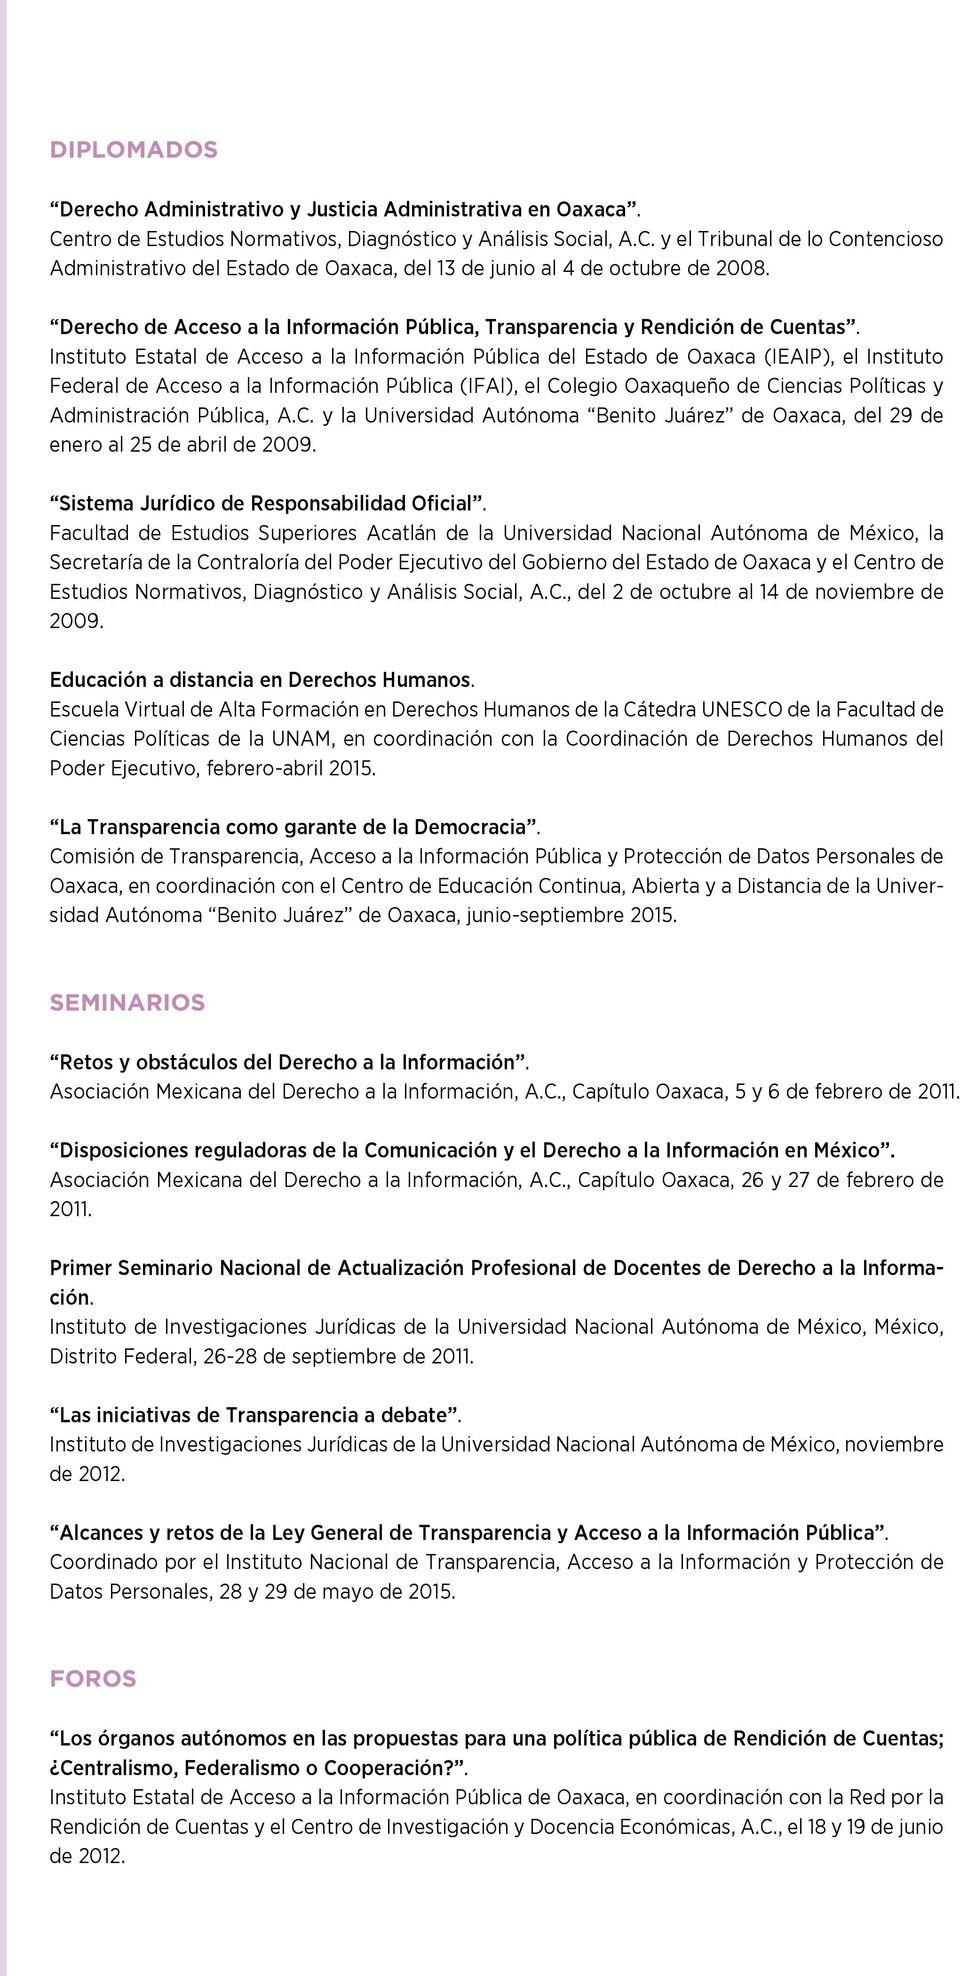 Instituto Estatal de Acceso a la Información Pública del Estado de Oaxaca (IEAIP), el Instituto Federal de Acceso a la Información Pública (IFAI), el Colegio Oaxaqueño de Ciencias Políticas y